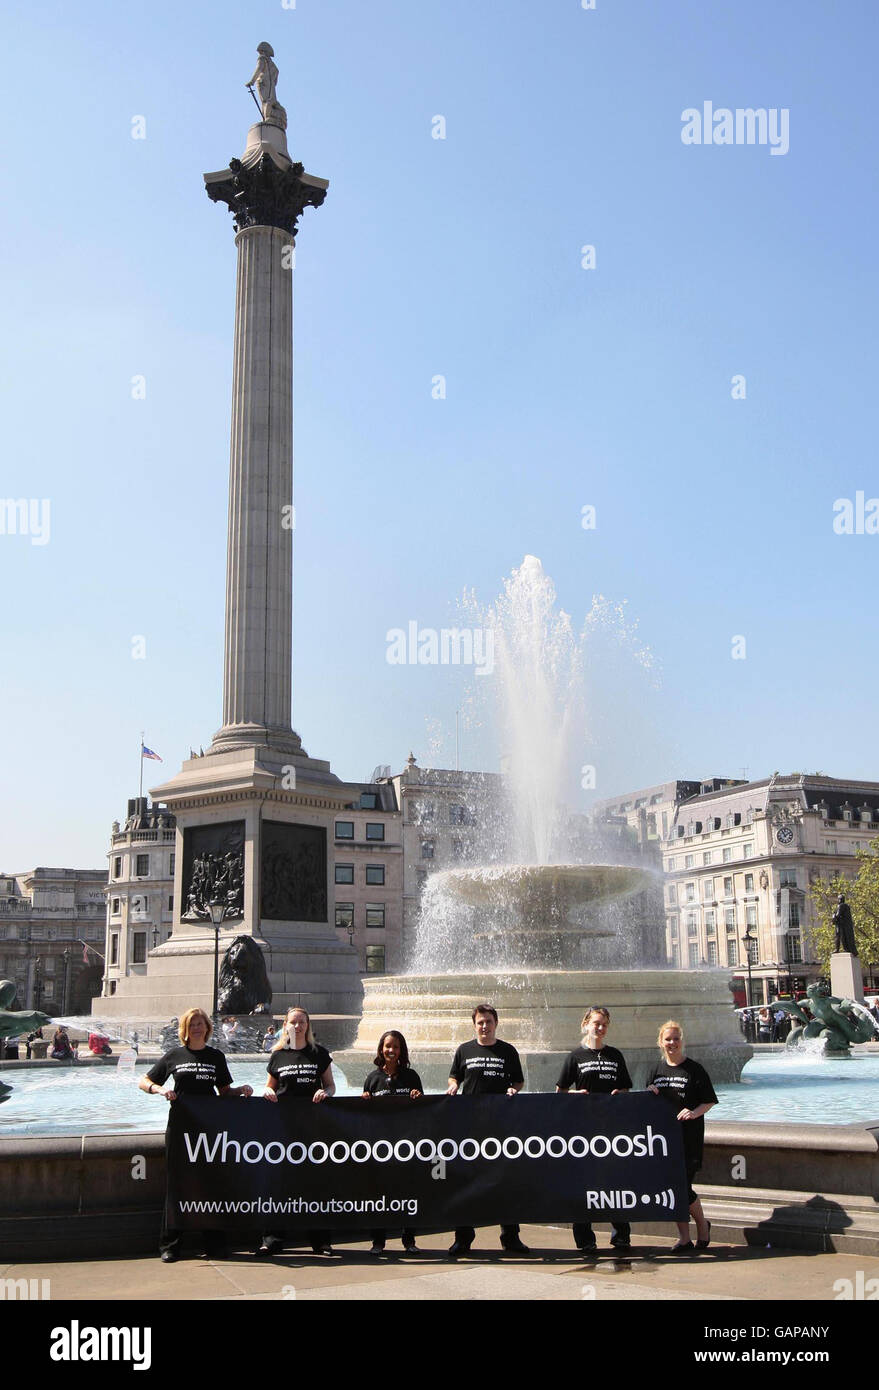 Aktivisten halten ein Banner mit der Untertitelung des „Whoosh“ des Brunnens, um die „Deaf Awareness Week“ zu markieren, indem sie die wichtigsten Wahrzeichen Trafalgar Square, London, untertiteln. Stockfoto